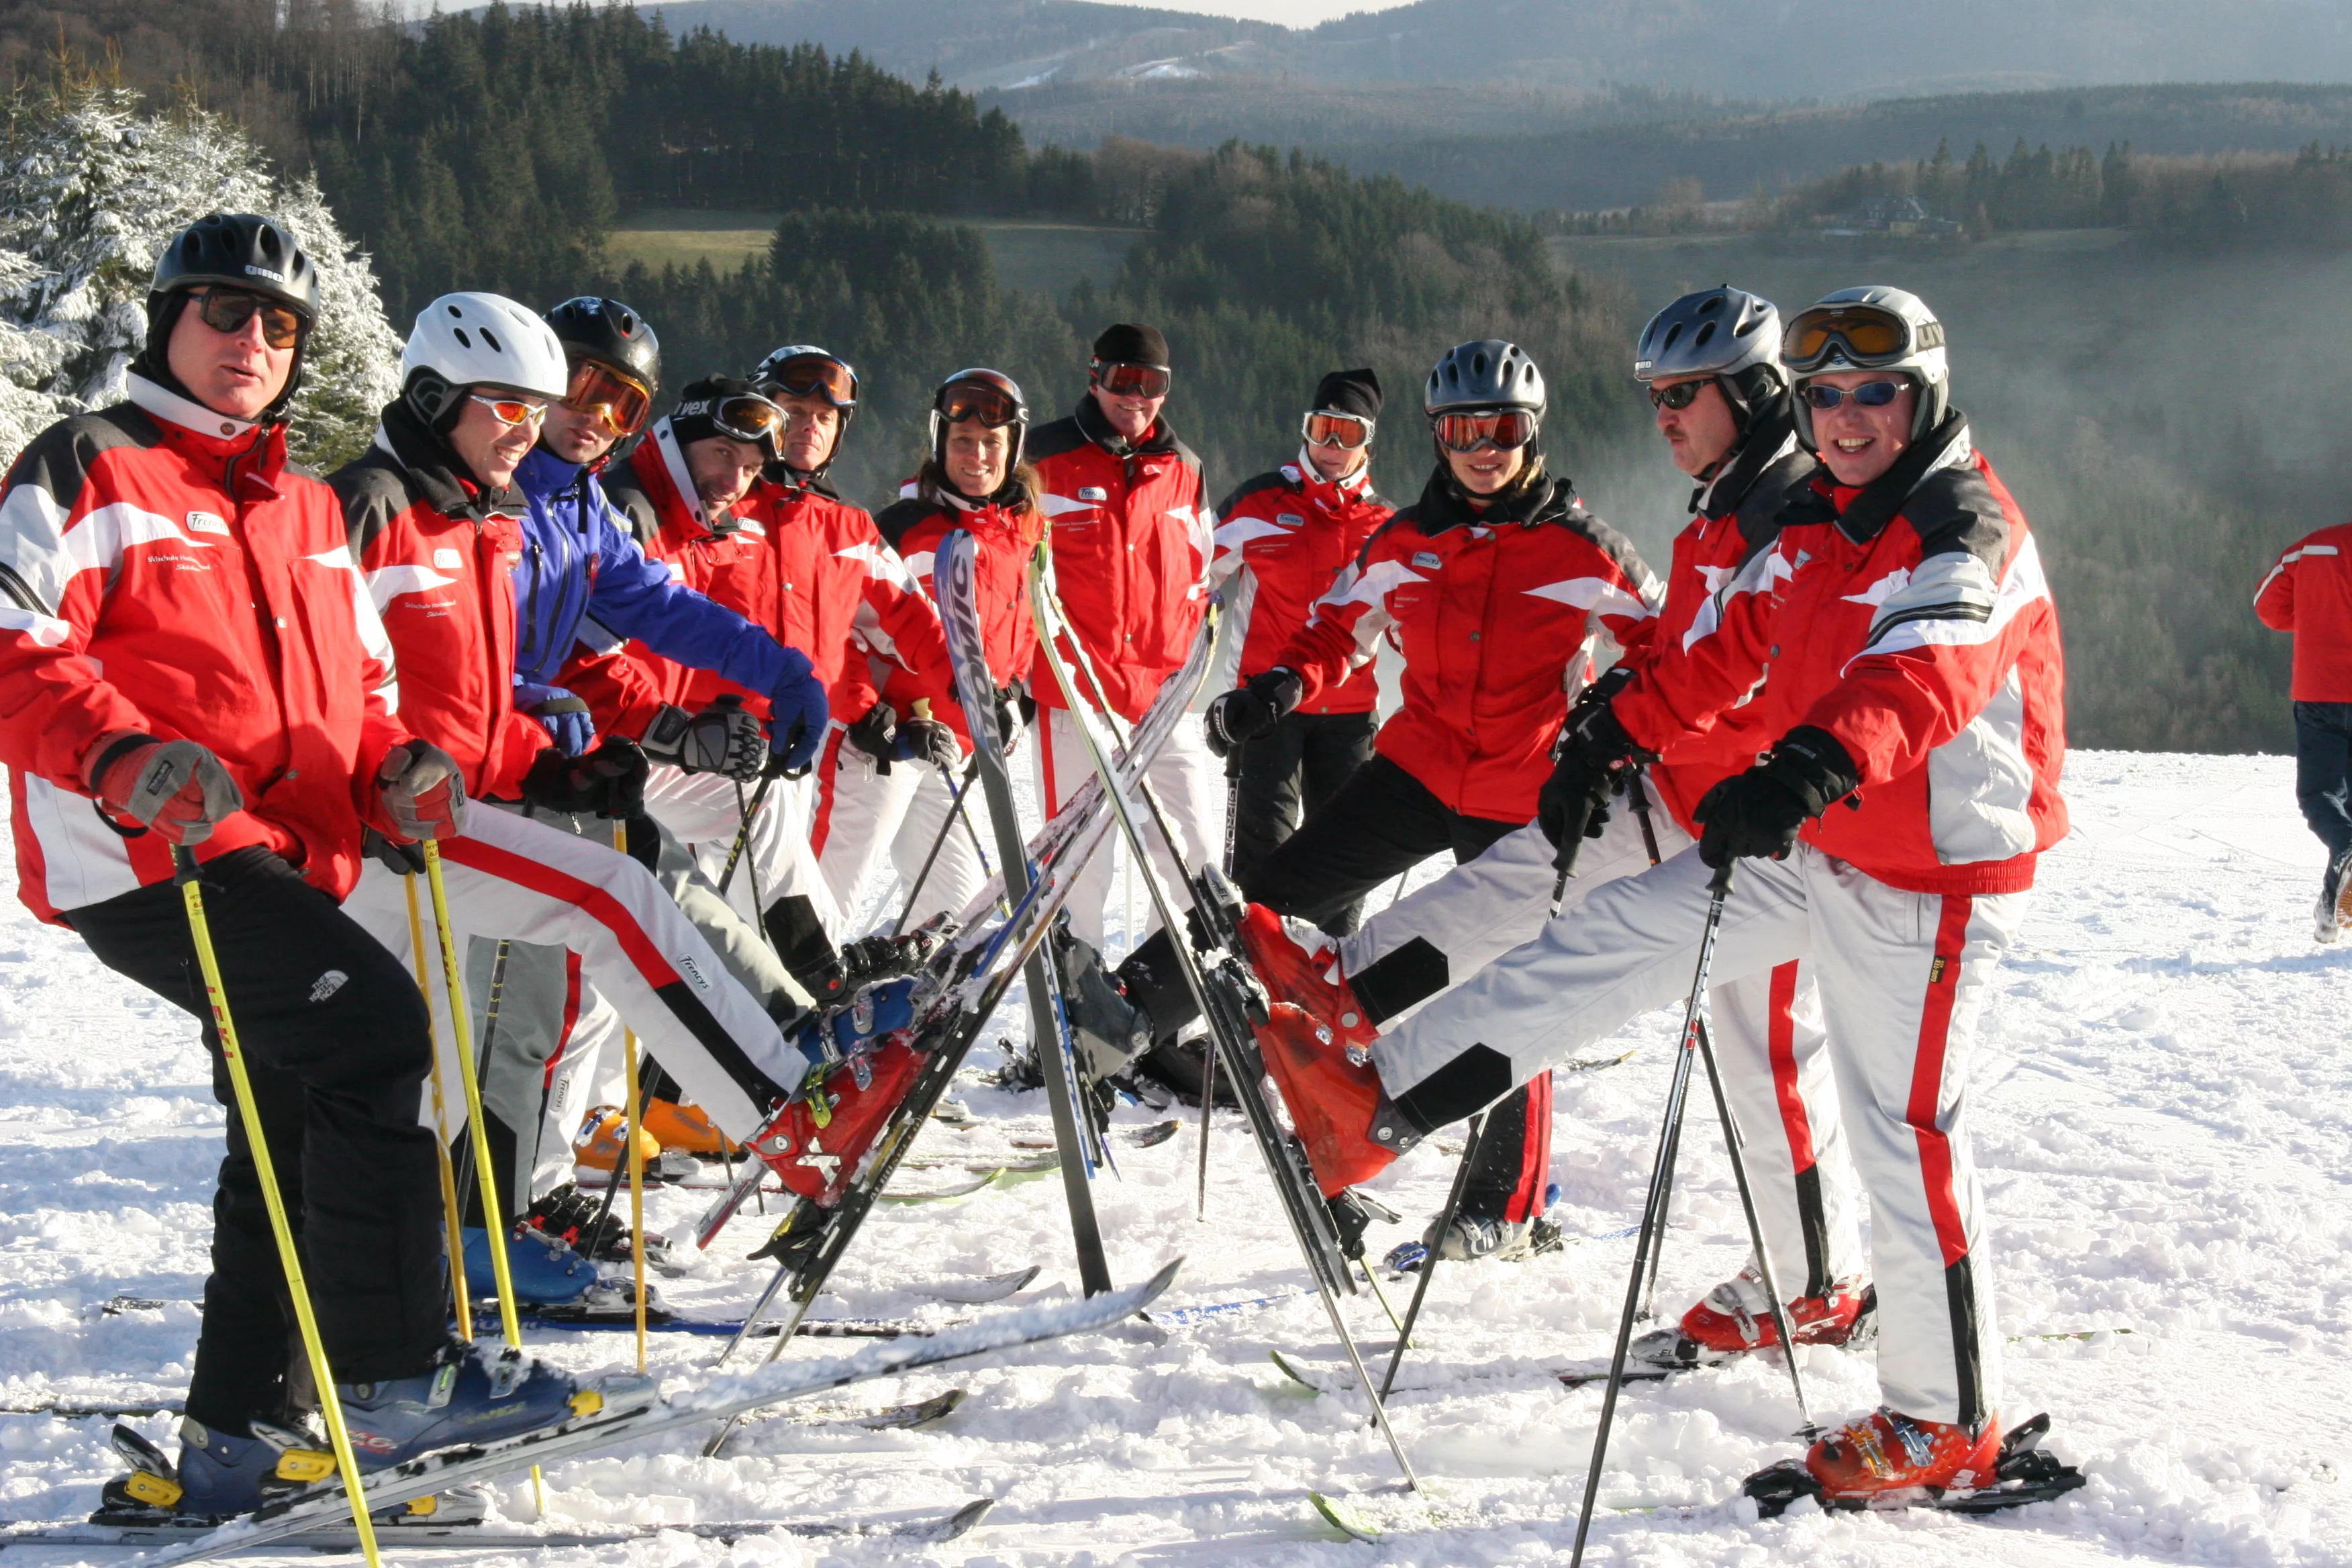 Neue Skischule Winterberg in Germany, Europe | Snowboarding,Skiing - Rated 0.7